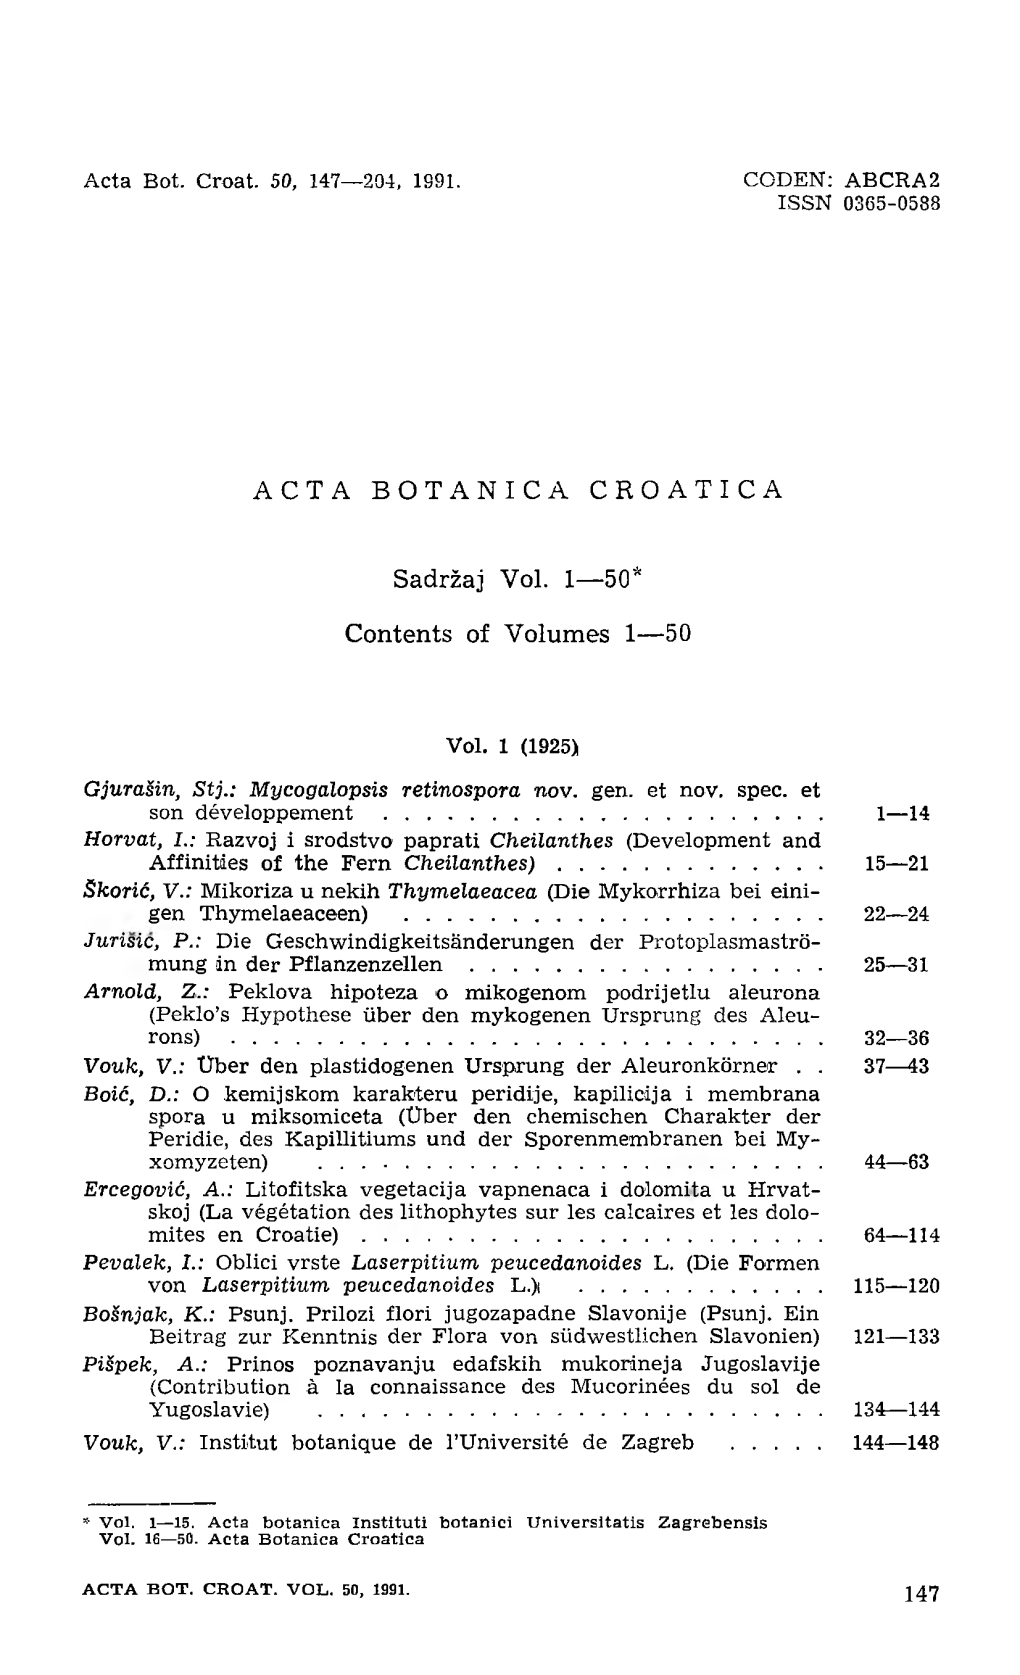 ACTA BOTANICA CROATICA Sadržaj Vol. 1—50* Contents of Volumes 1—50